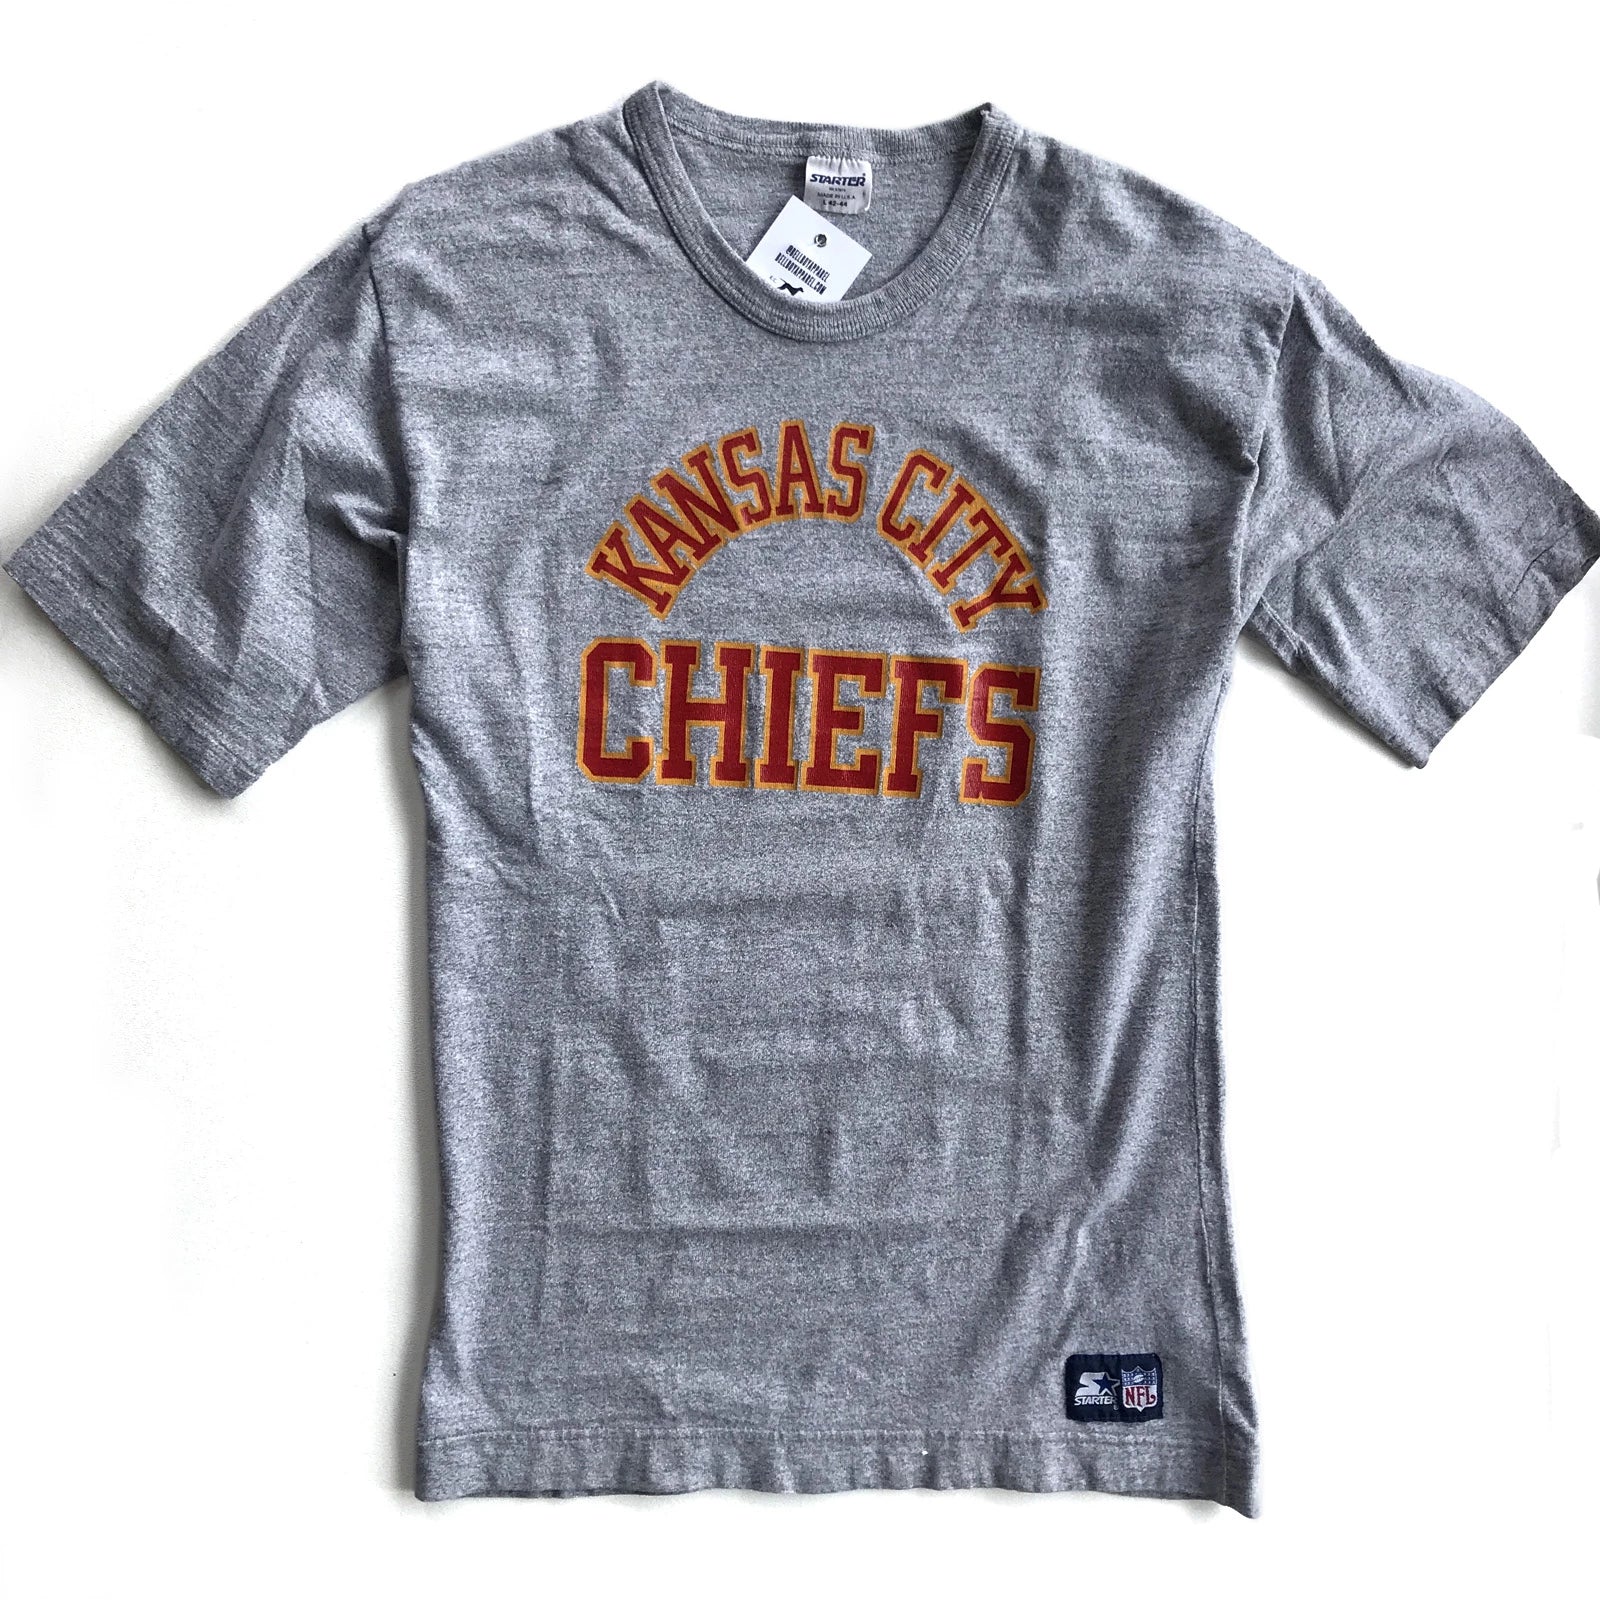 chiefs shirts at target